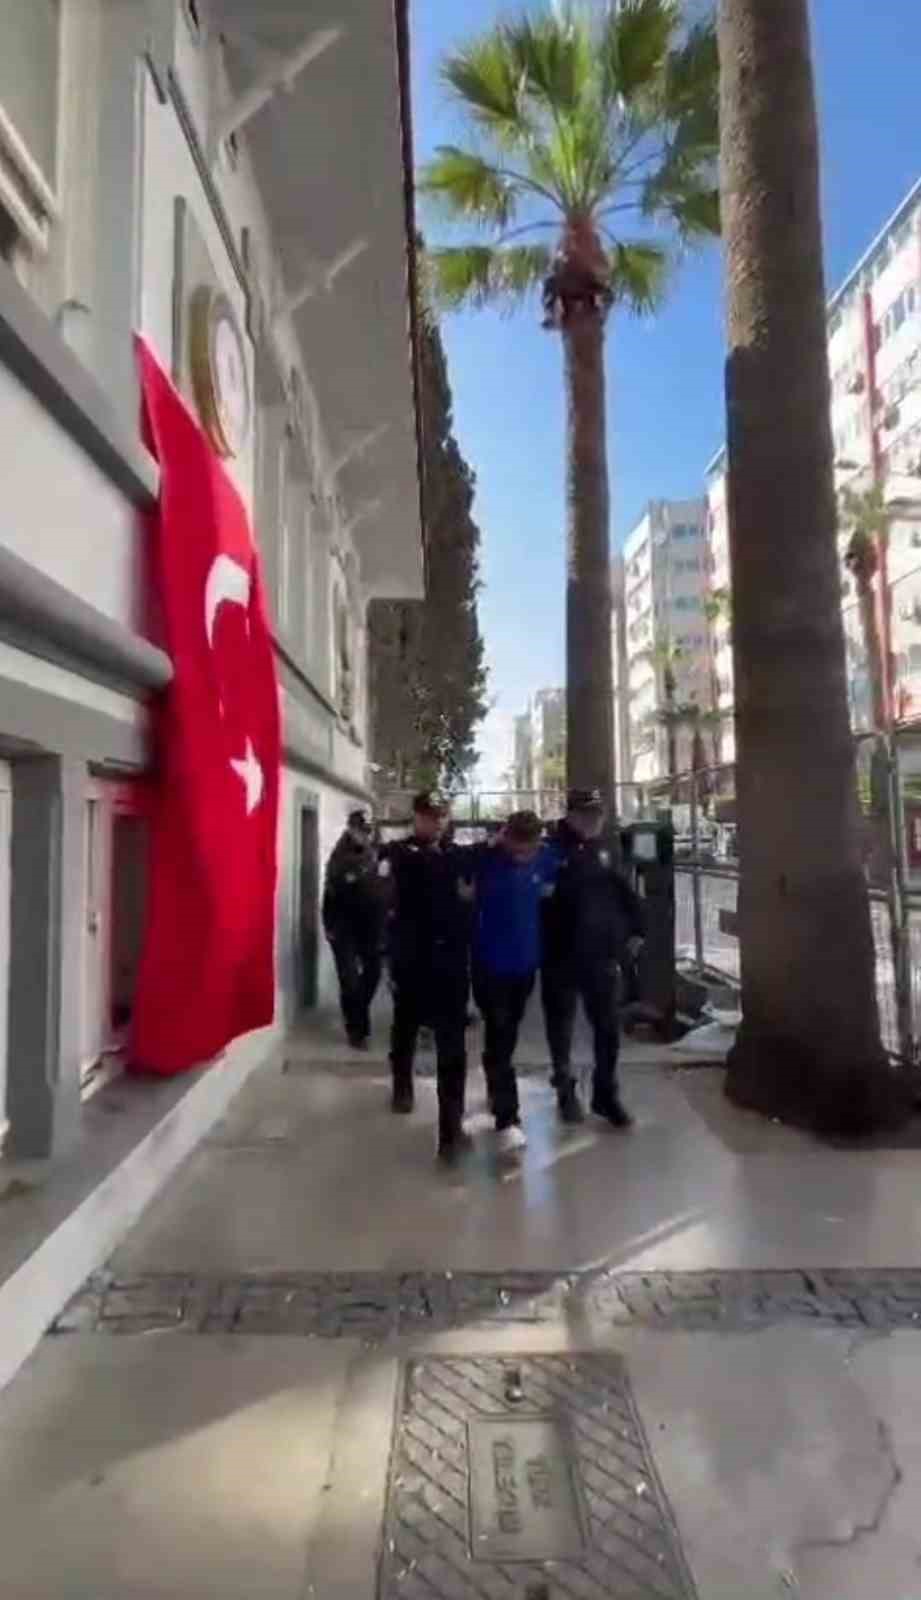 İzmir’de trans bireyin gasp edilerek darp edilmesi olayında 6 gözaltı
